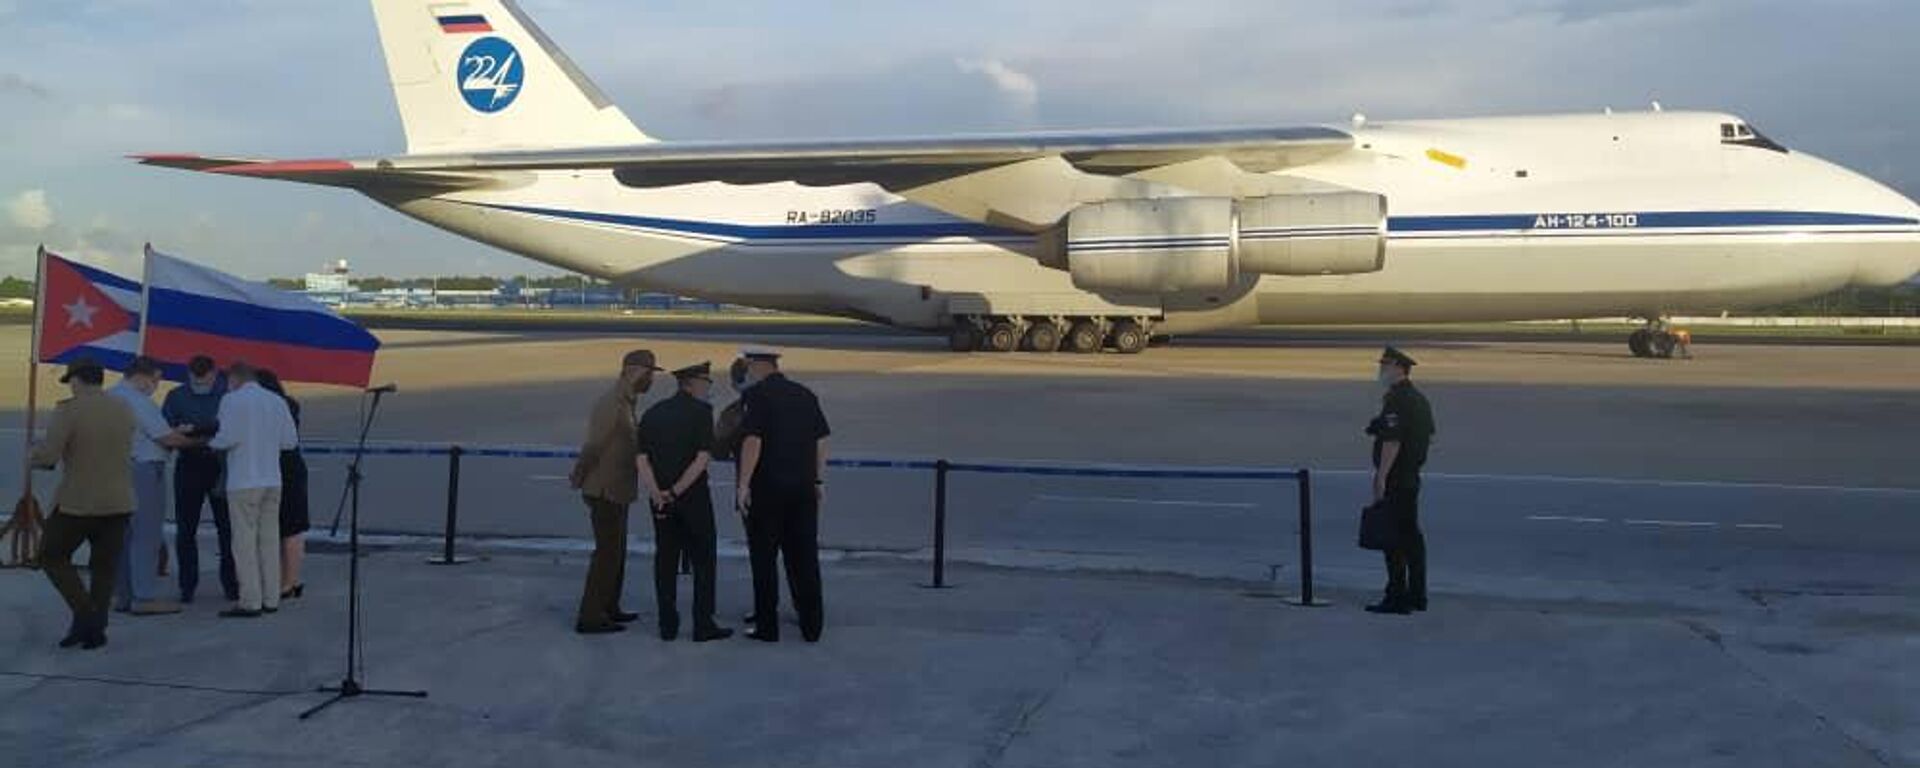 Avión ruso llega a Cuba con más de 40 toneladas de ayuda humanitaria - Sputnik Mundo, 1920, 13.08.2021